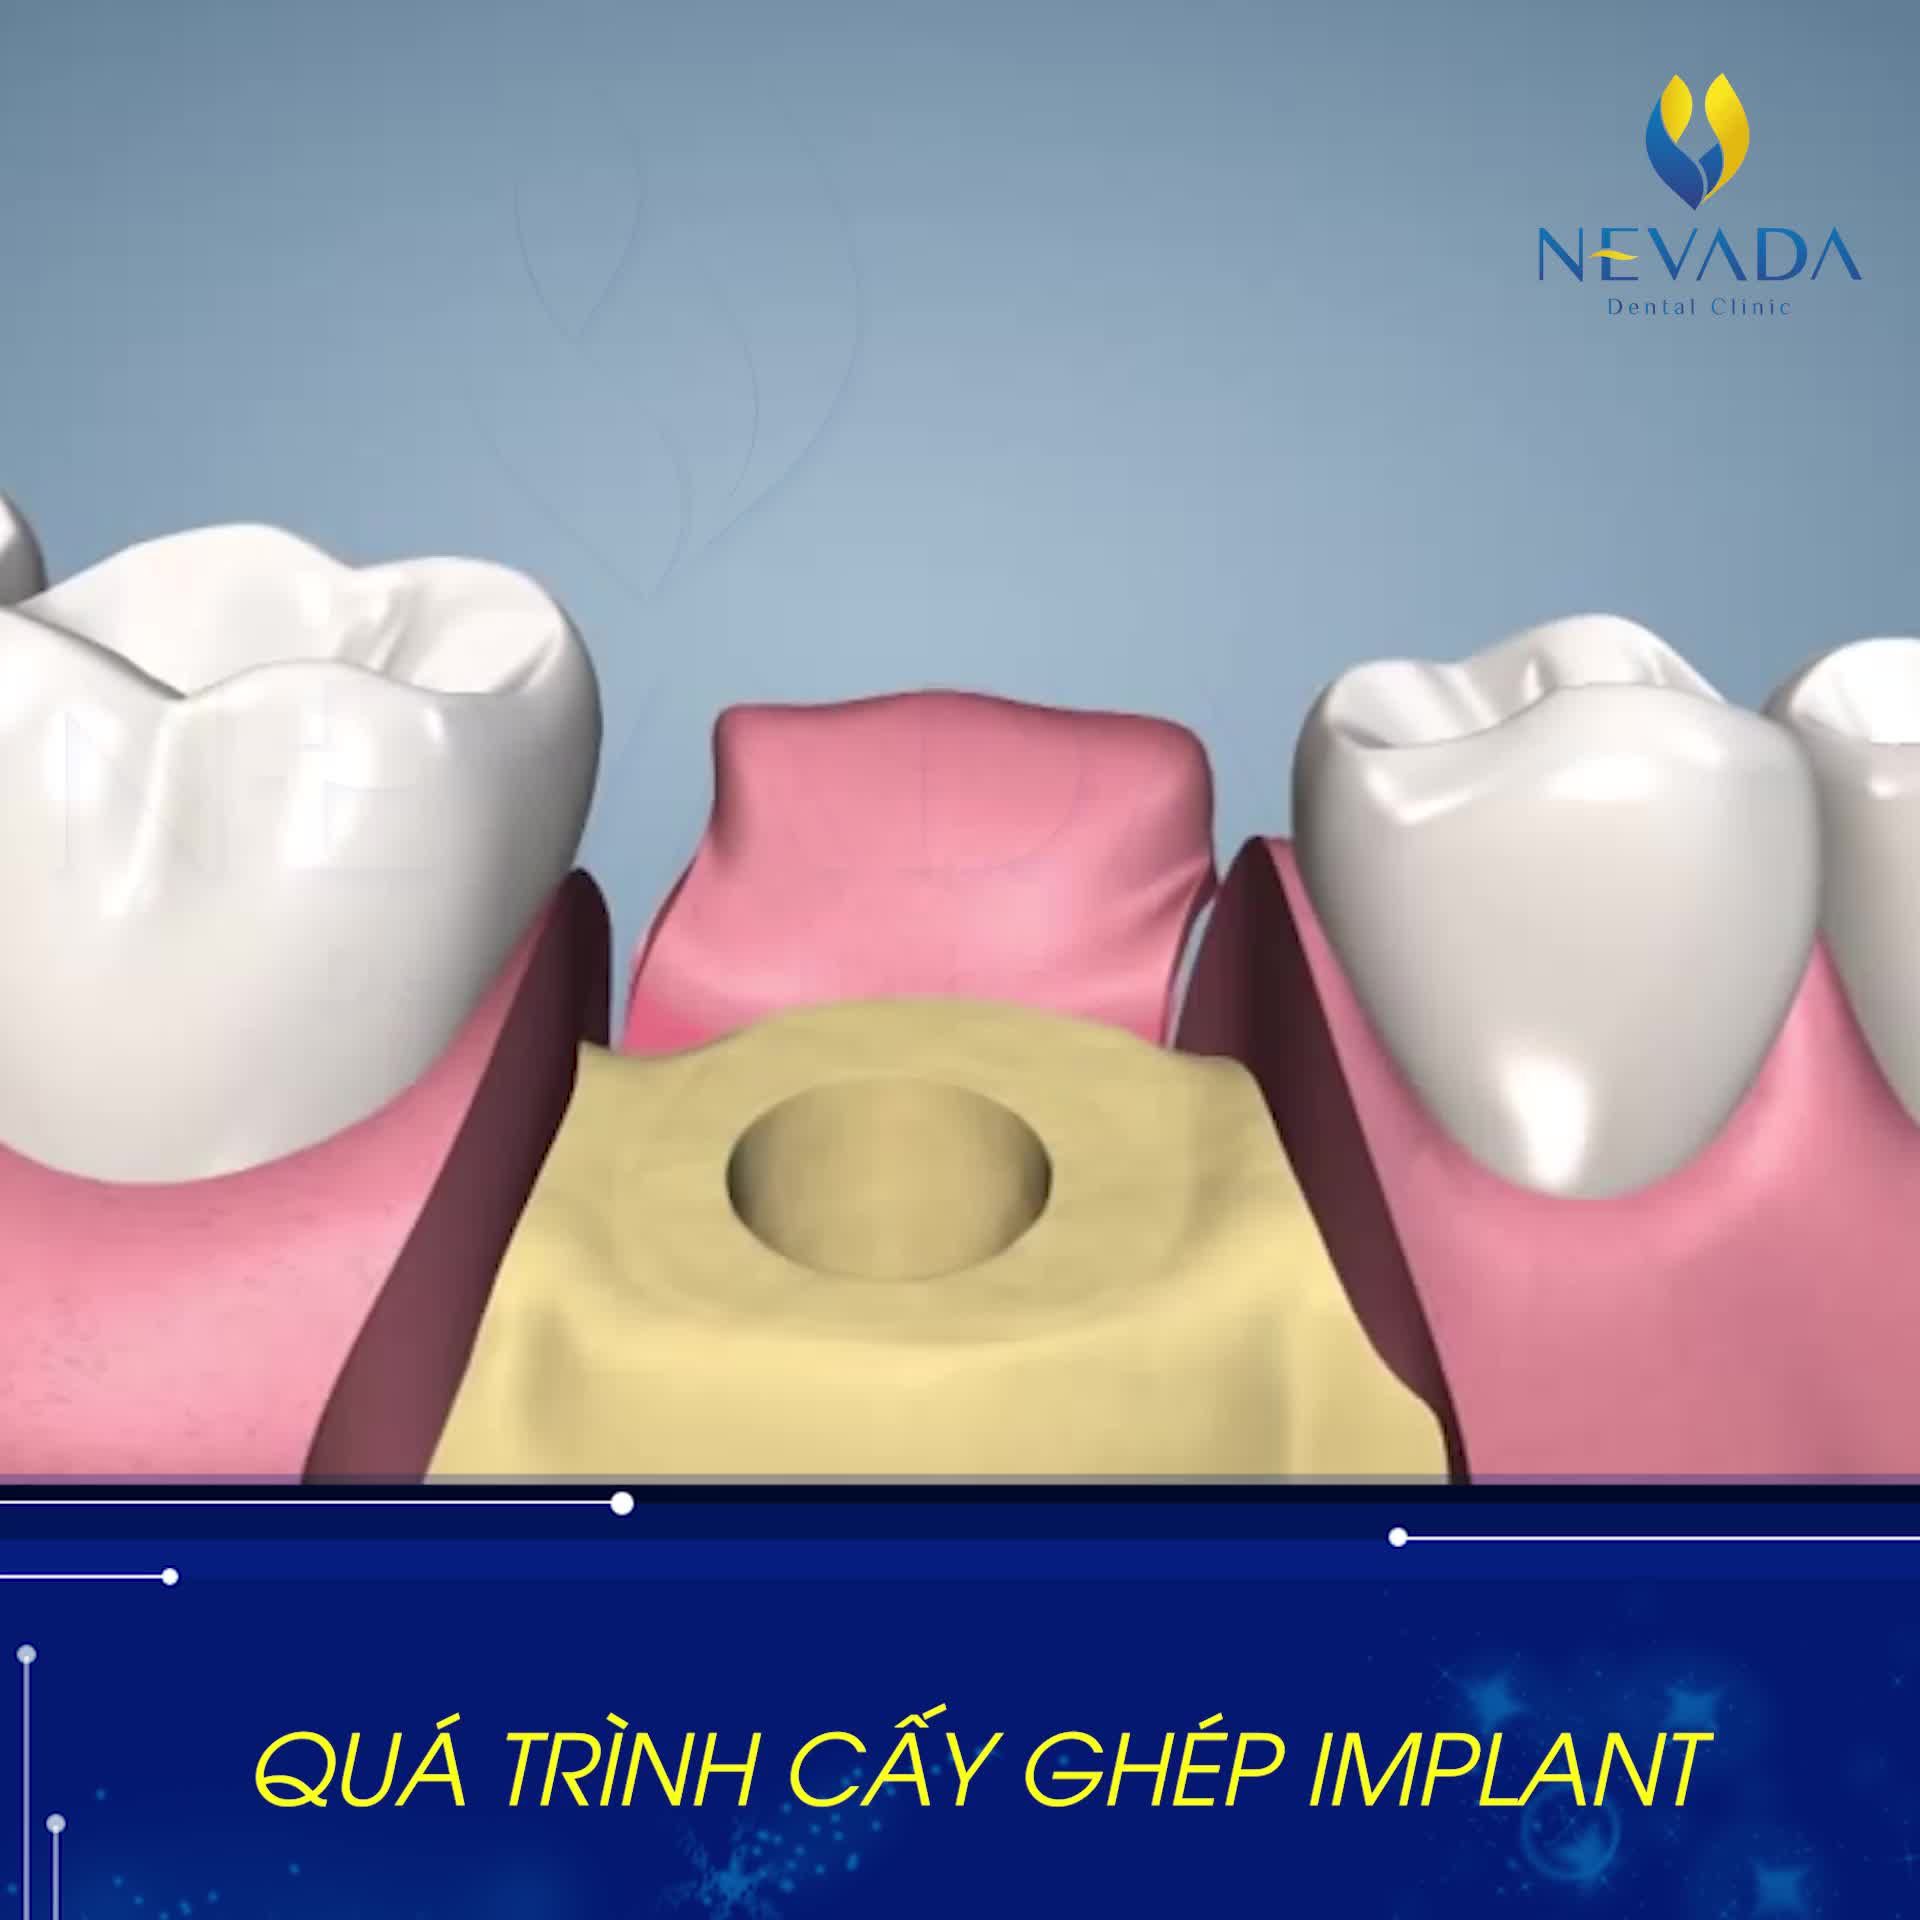 Trồng răng Implant được xem là giải pháp tiên tiến nhất hiện nay trong phục hình răng đã mất.